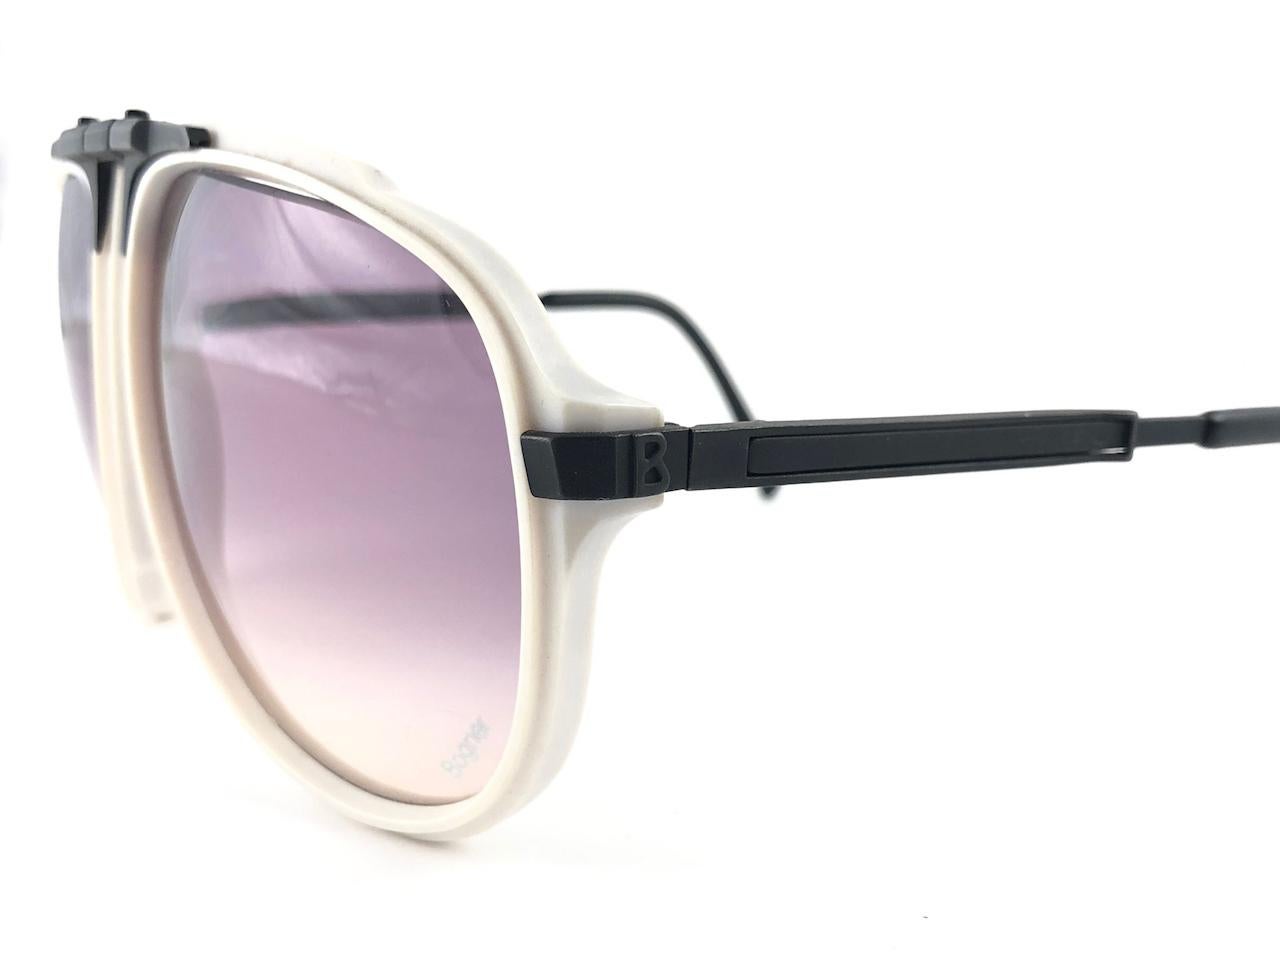 New Vintage Bogner 7003 90 Black & White James Bond Roger Moore 007 Sunglasses 3